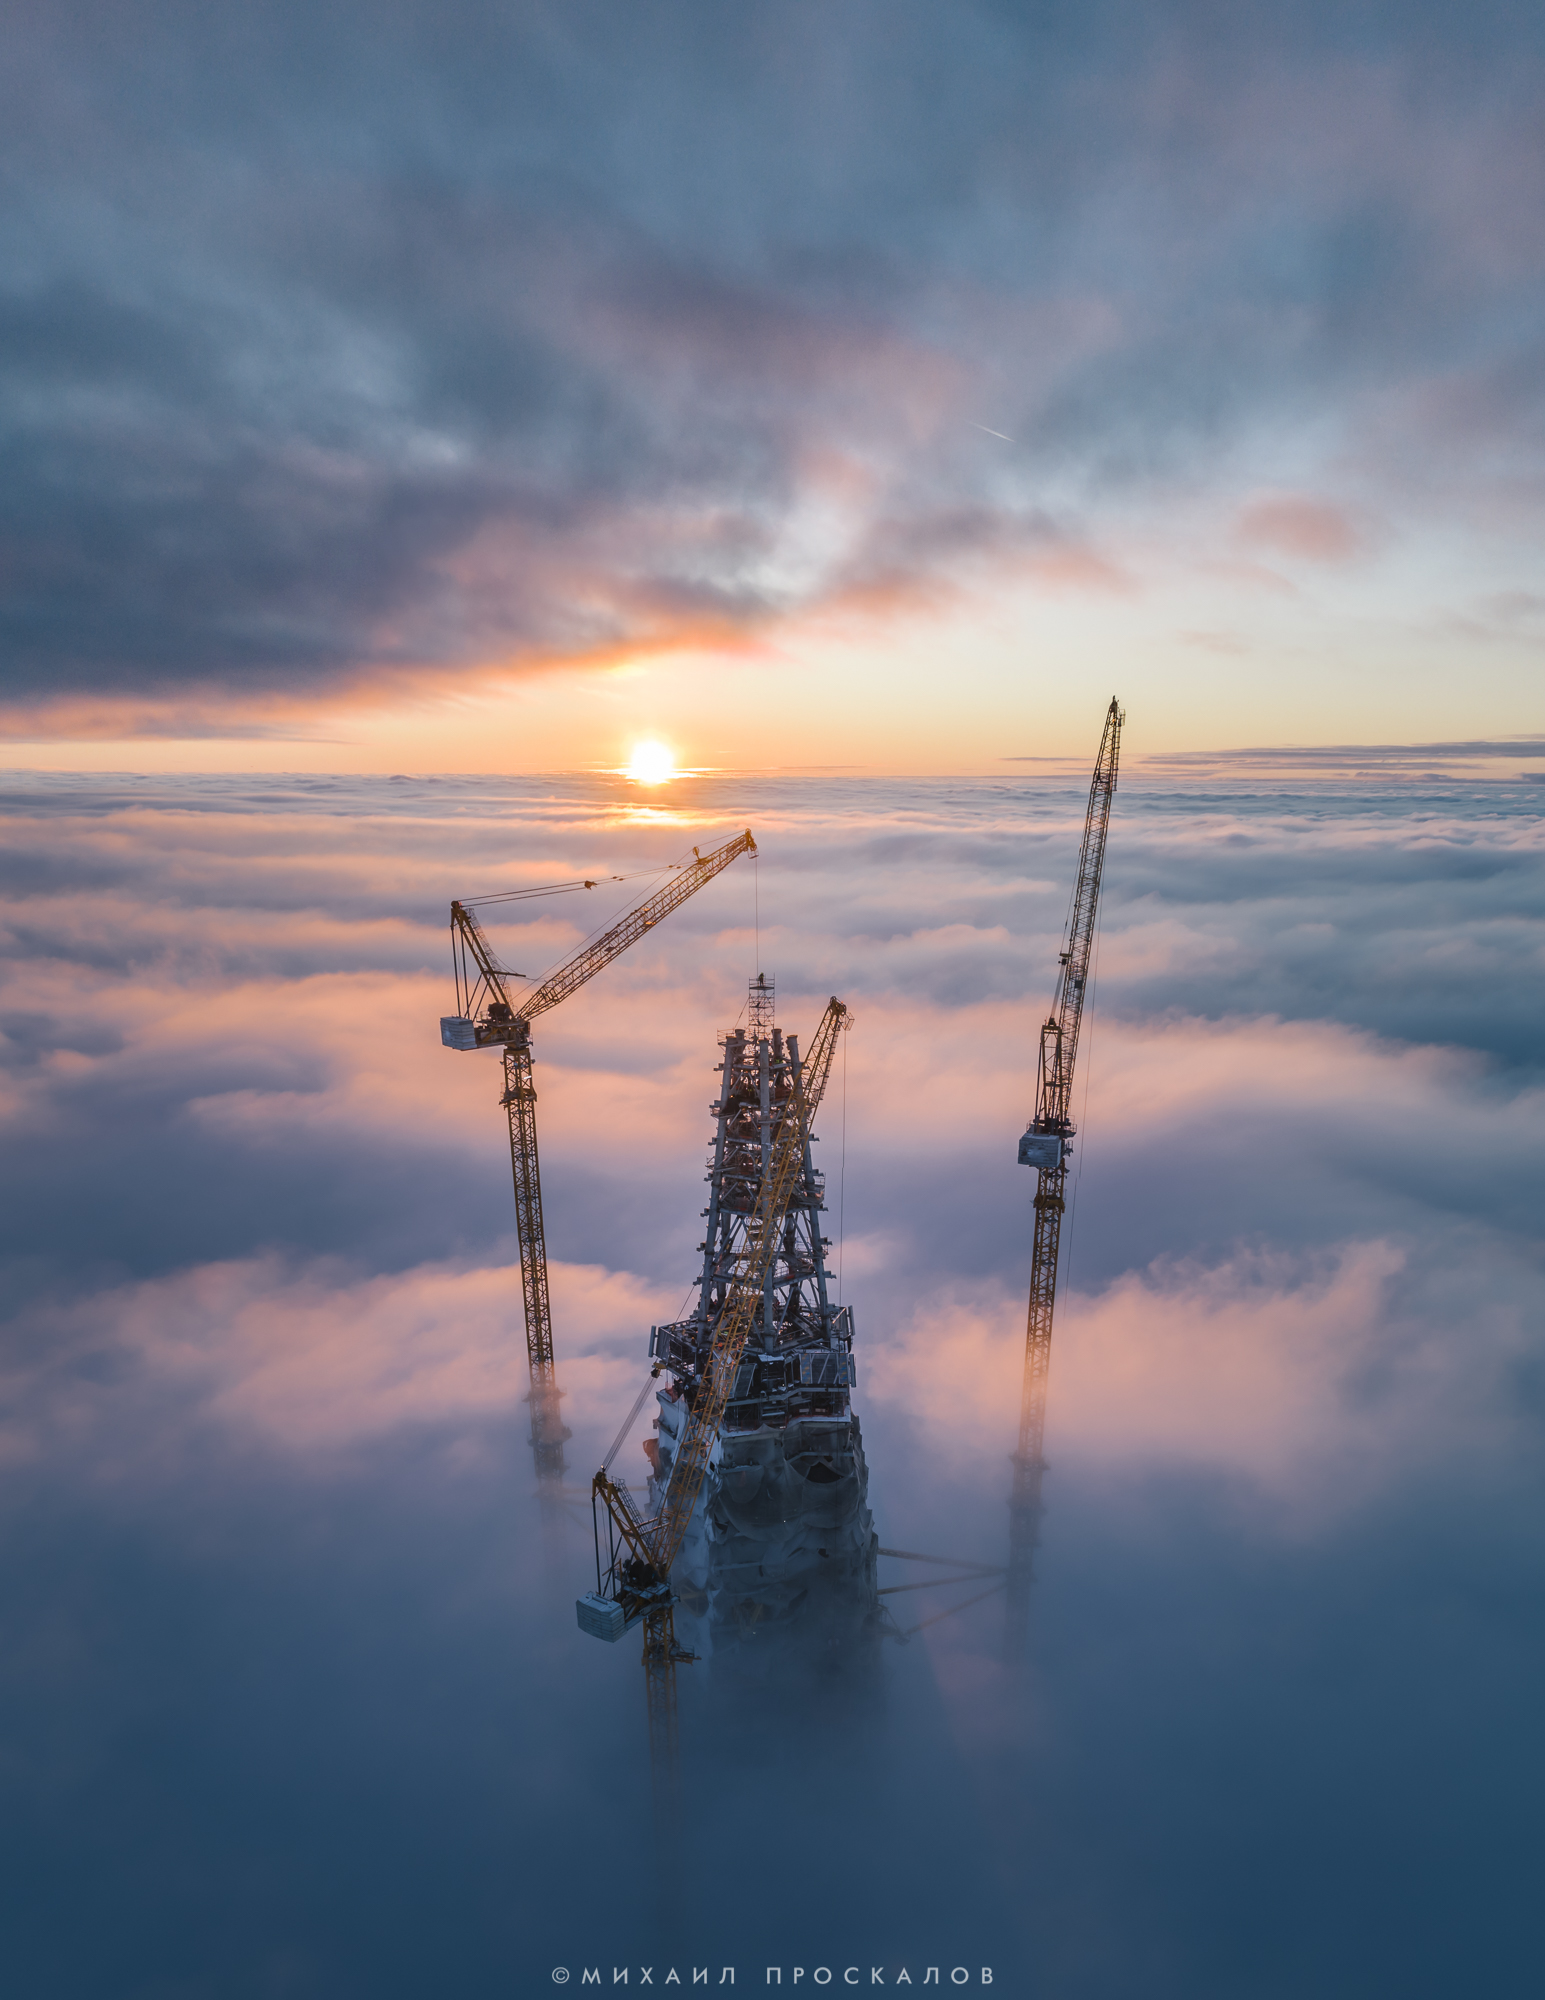 Construction Site Sky Clouds Cranes Machine 1545x2000